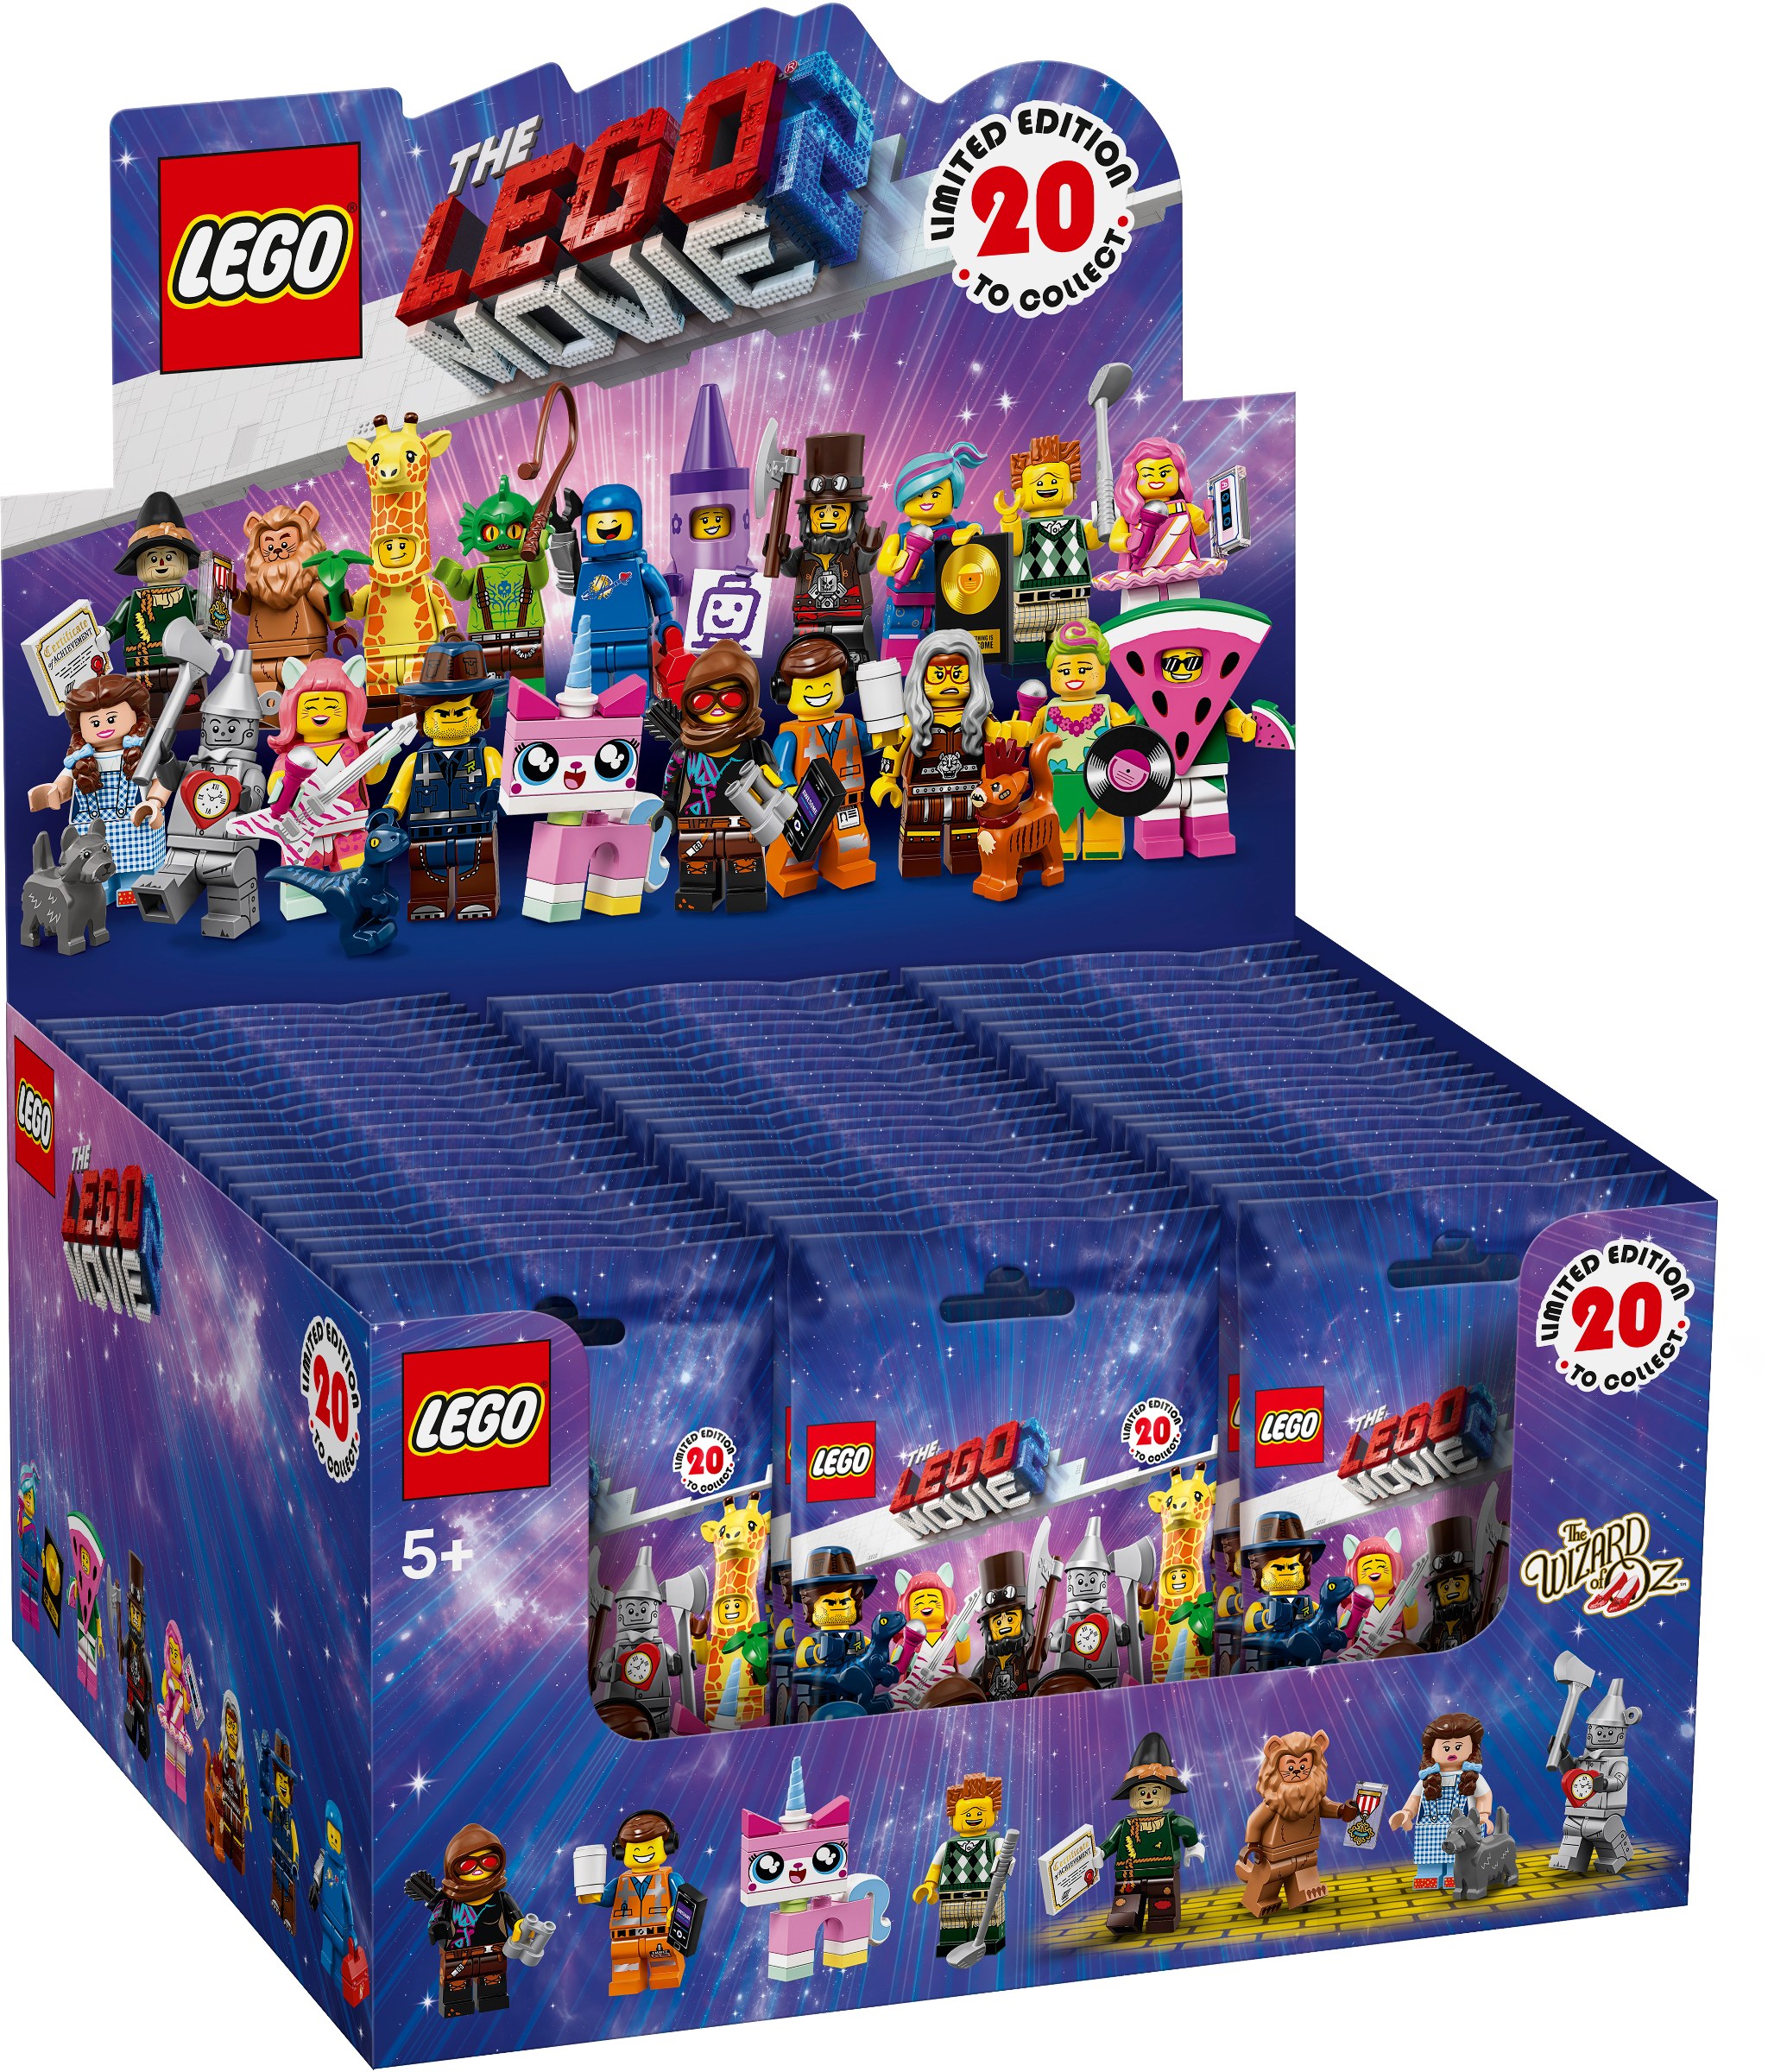 Bricker - Brinquedo contruído por LEGO 71023-22 LEGO Minifigures - The LEGO  Movie 2: The Second Part - Sealed Box